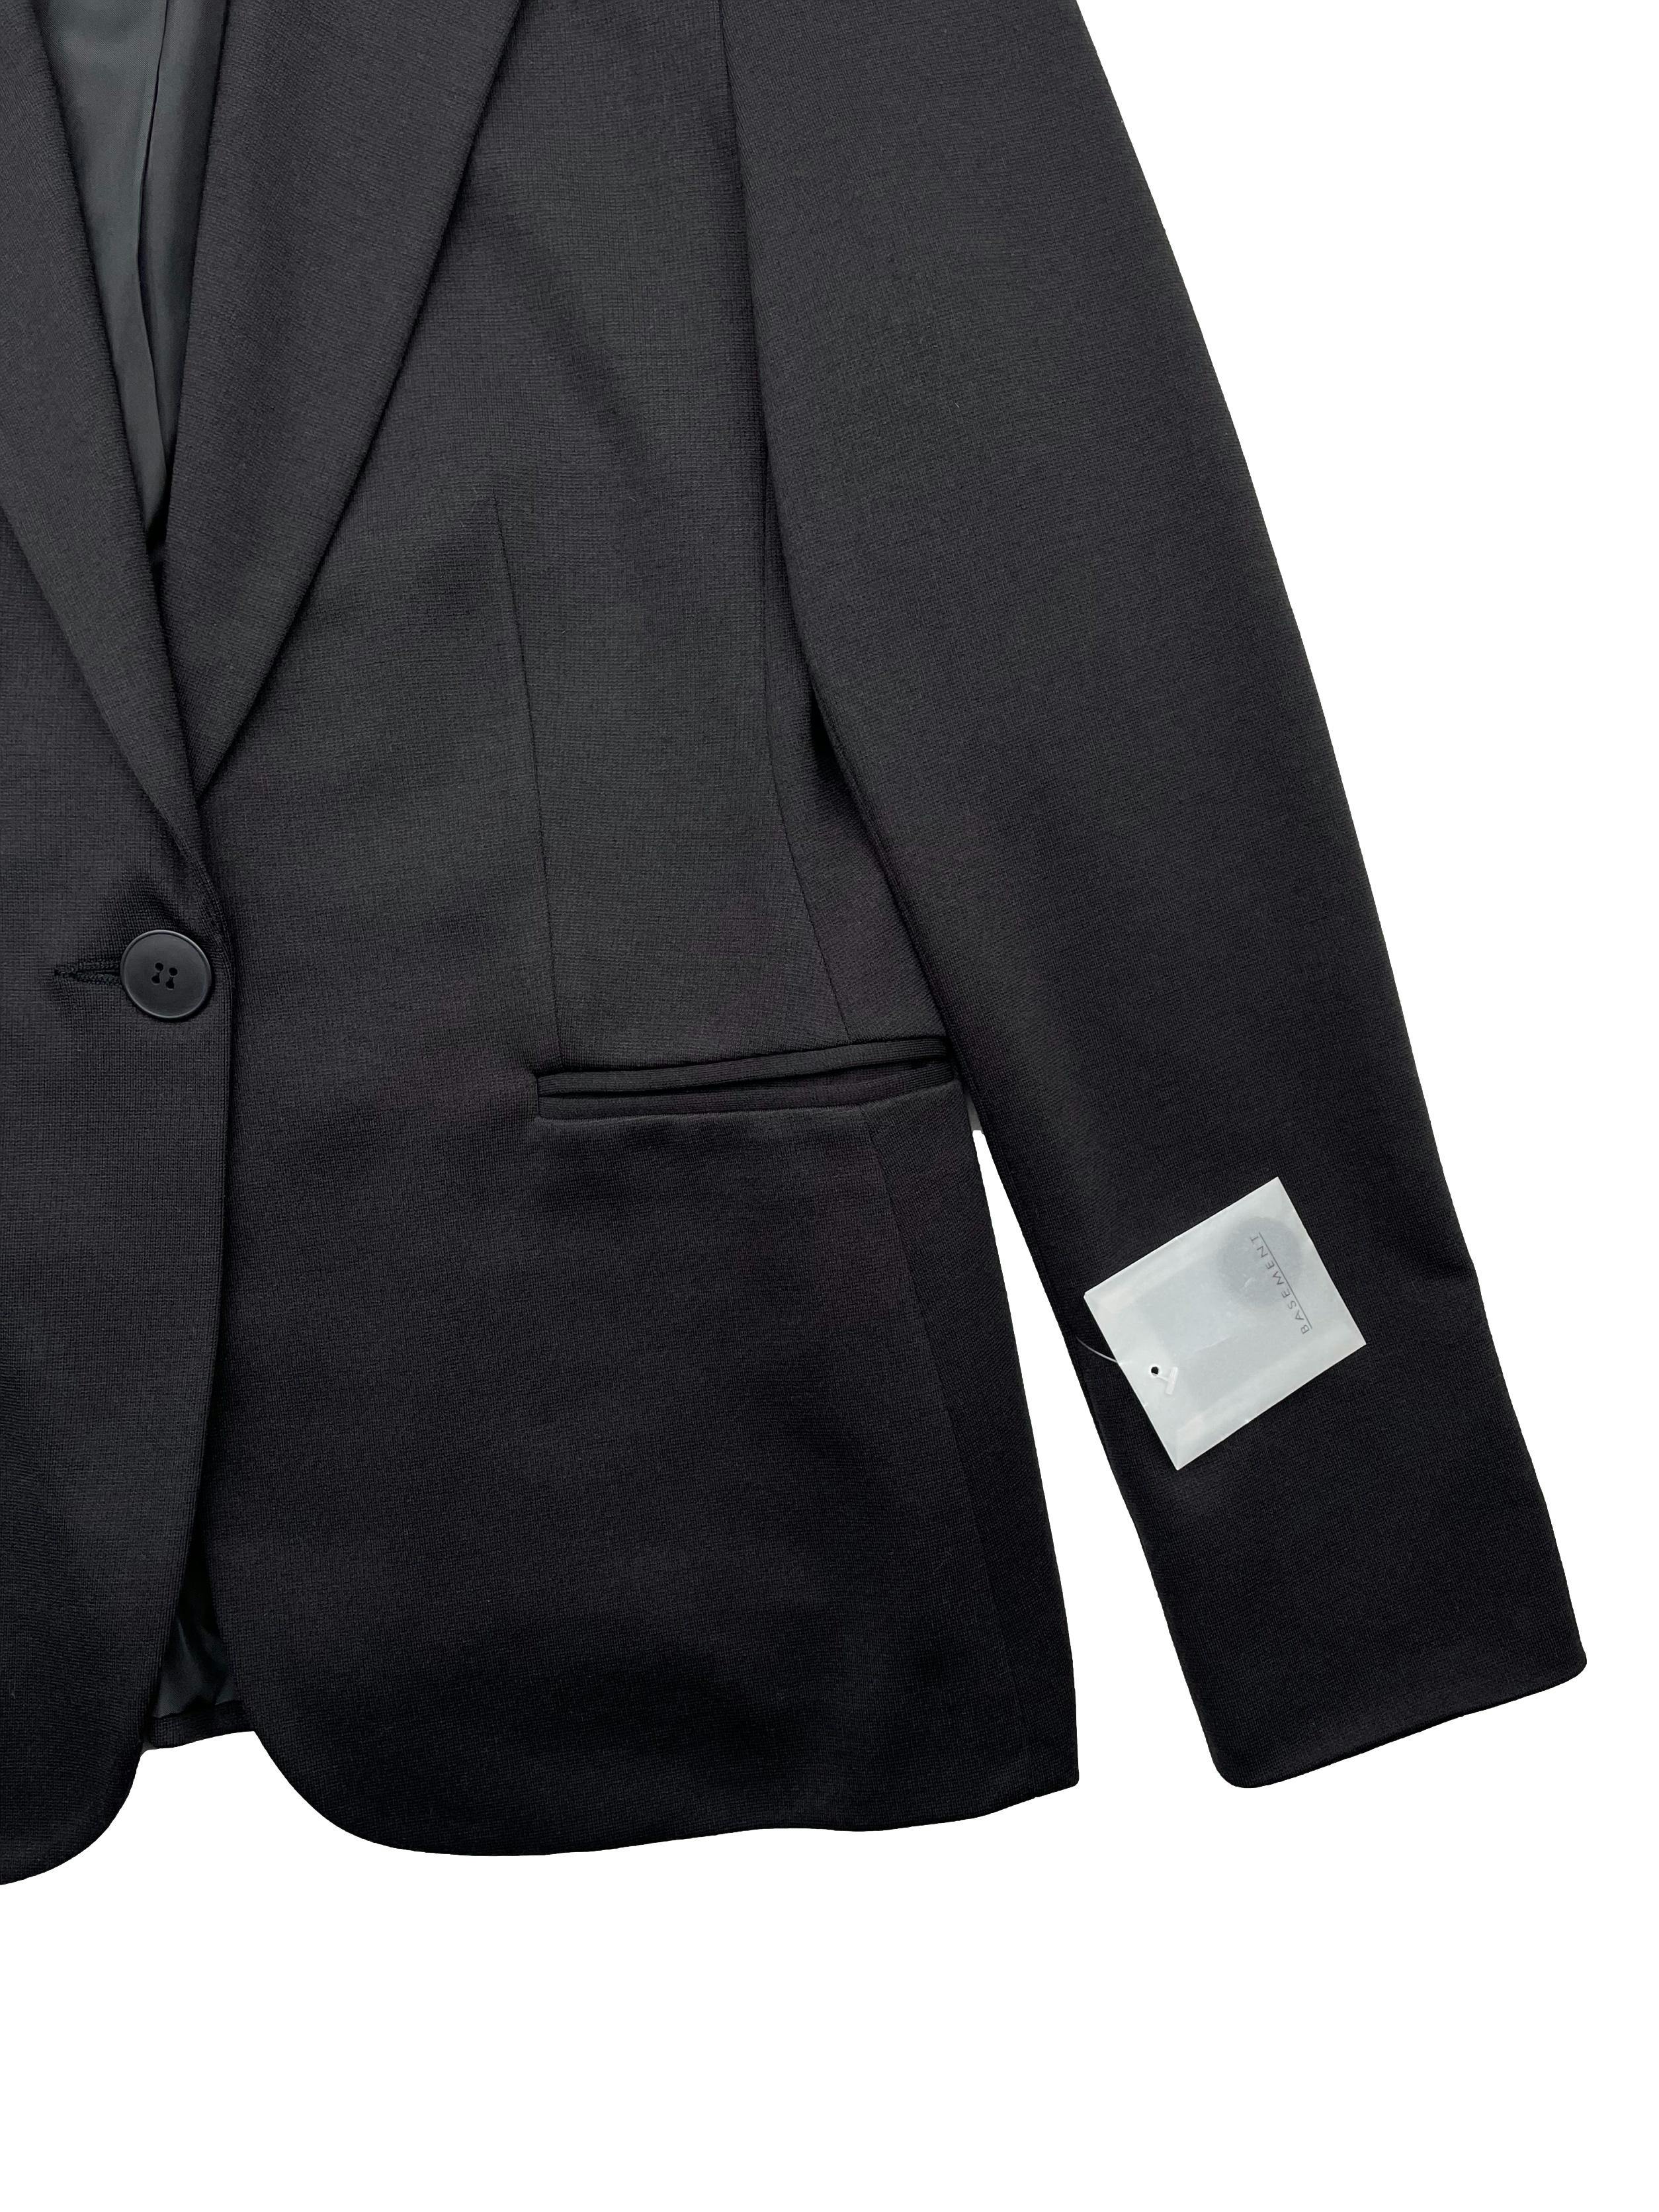 Blazer Basement negro, forrado, con hombreras, falsos bolsillos, botón frontal con uno de repuesto. Talla 40 en etiqueta. Busto 92cm, Largo 63cm.